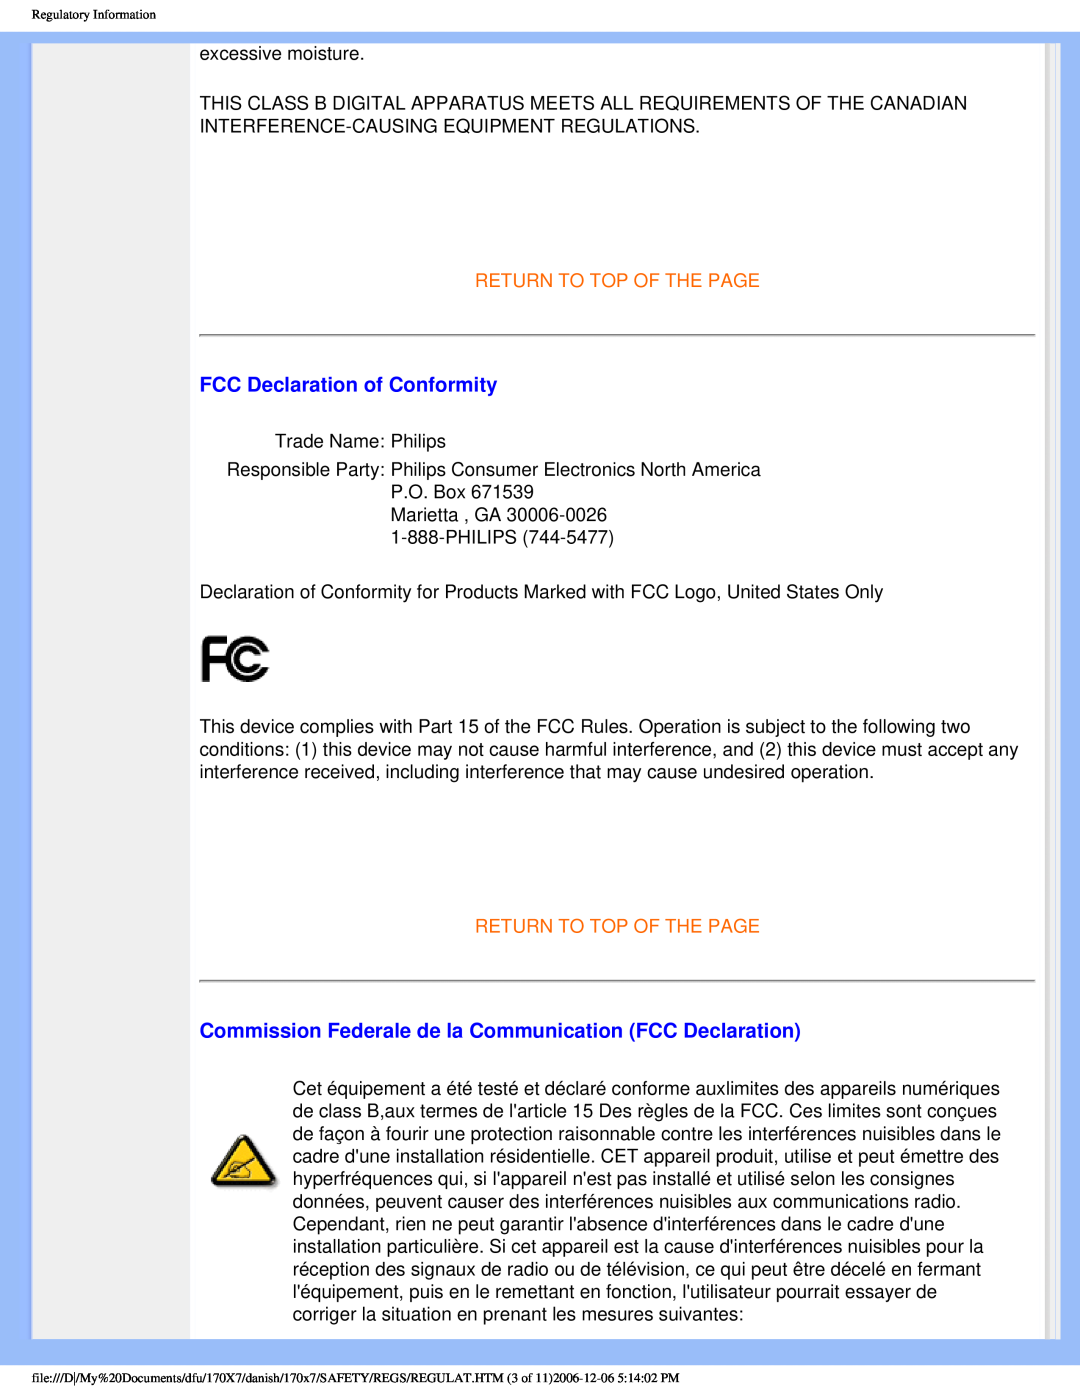 Philips 170x7 user manual FCC Declaration of Conformity, Commission Federale de la Communication FCC Declaration 